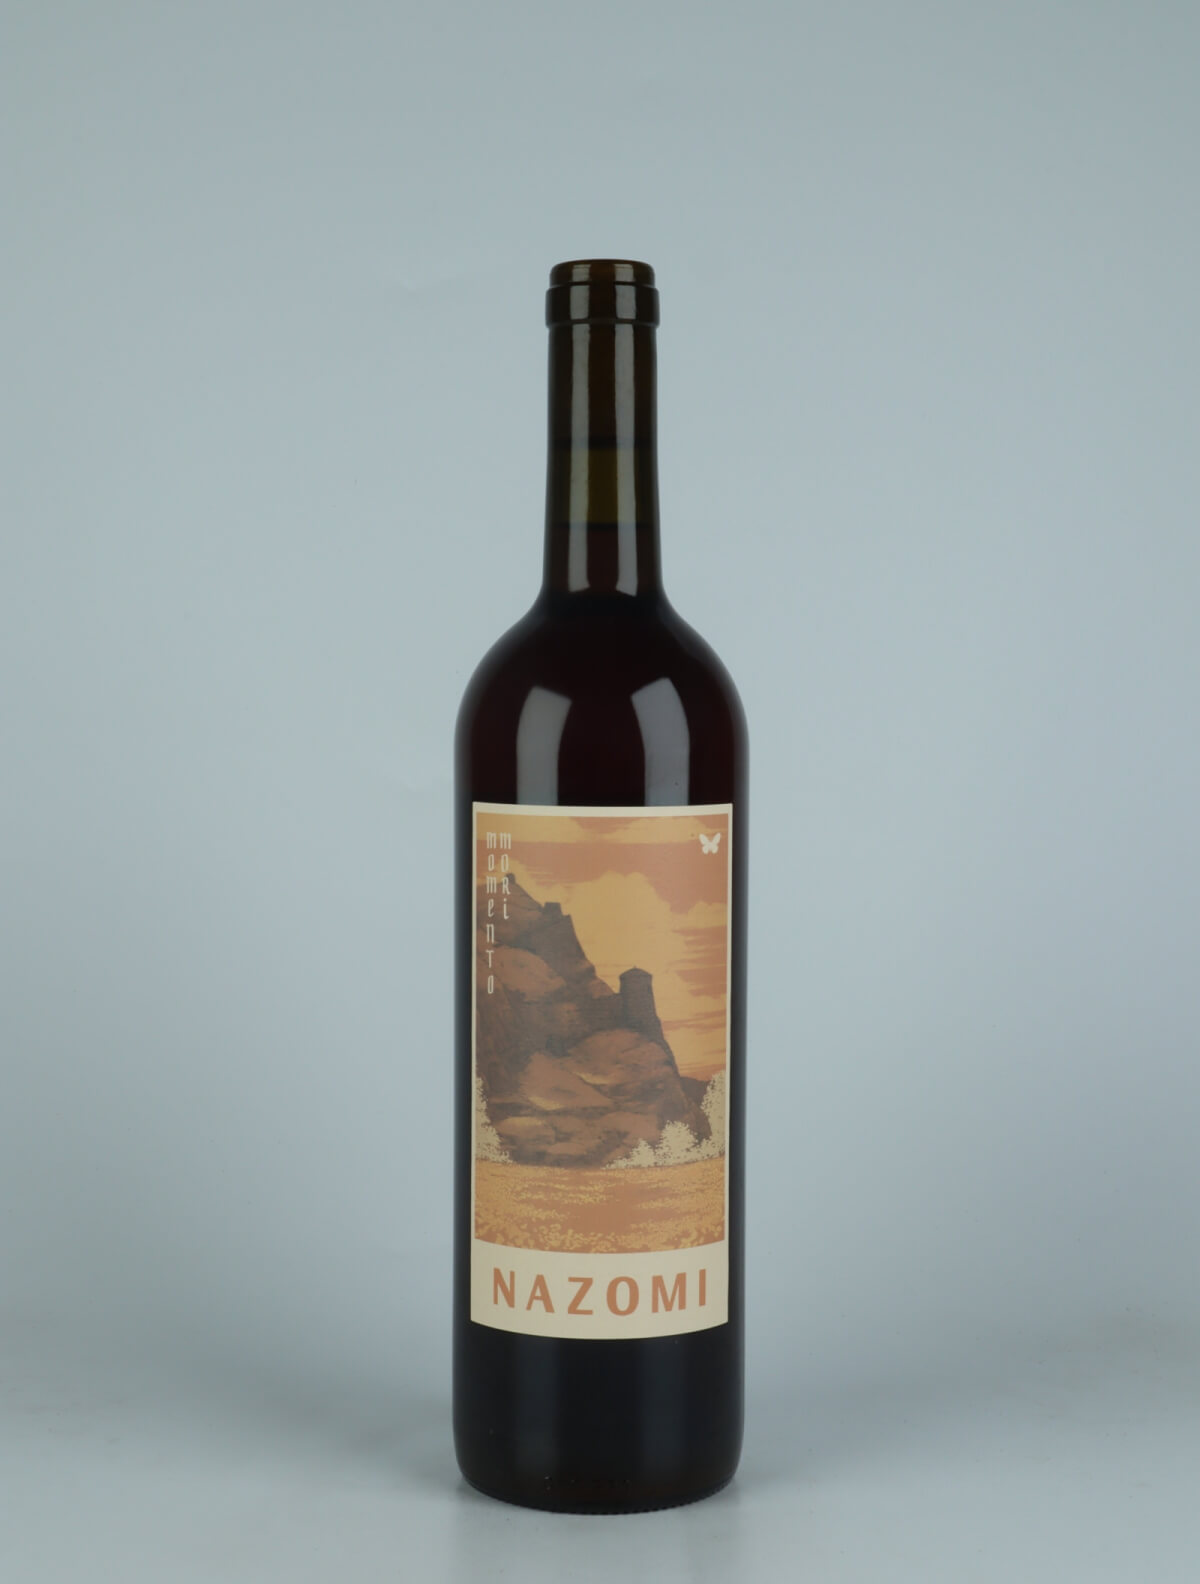 A bottle 2022 Nazomi Red wine from Momento Mori, Victoria in Australia